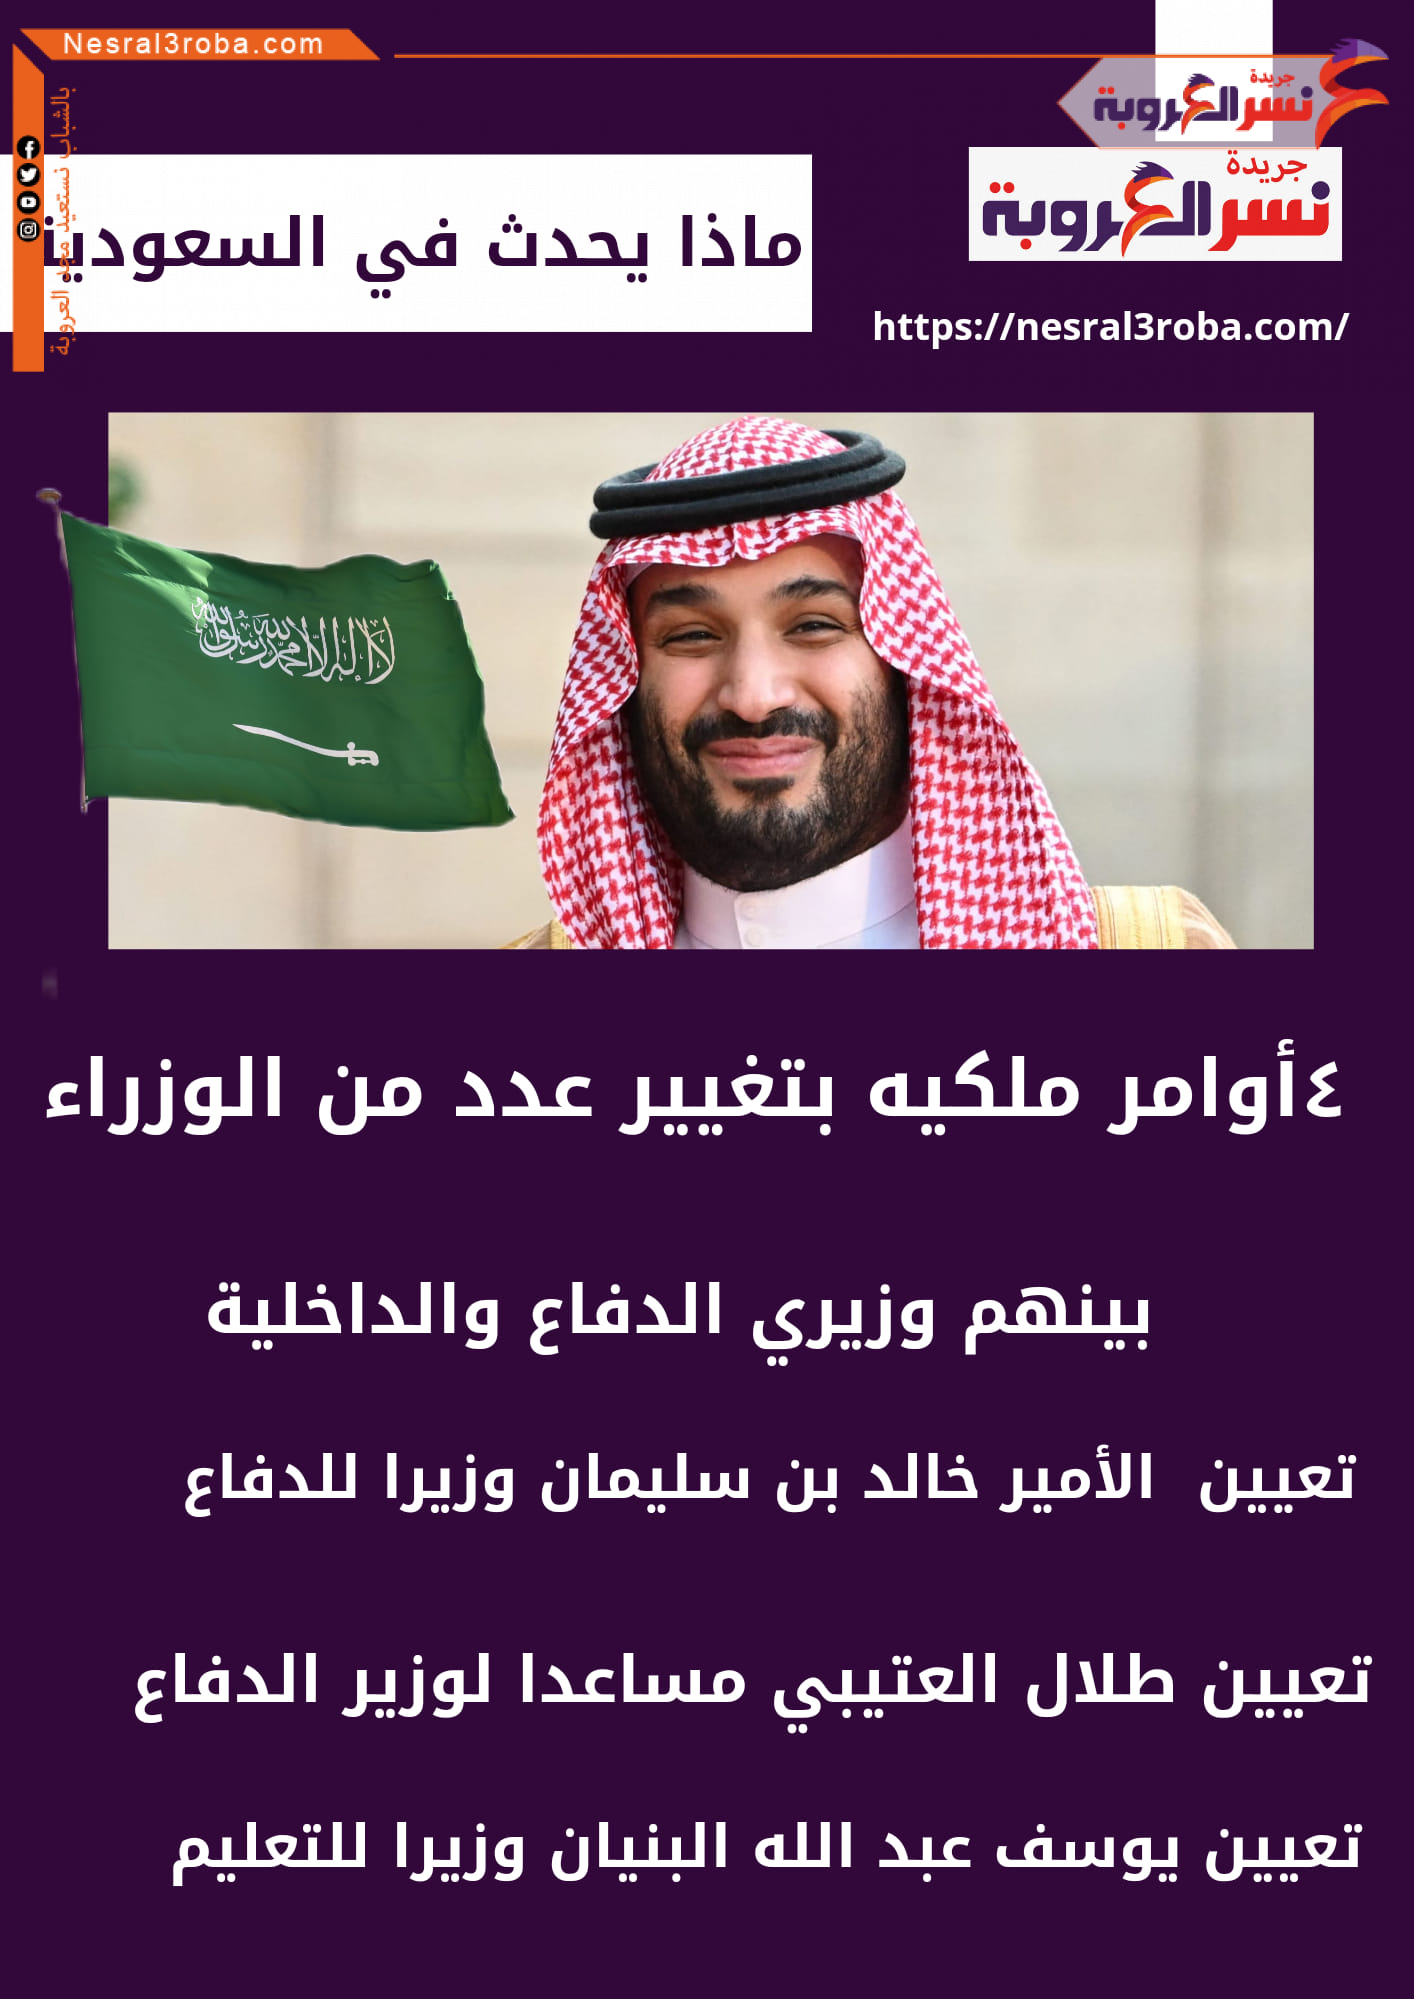 ماذا يحدث في السعودية.. 4 أوامر ملكية بتغيير عدد من الوزراء بينهم وزيري الدفاع والداخلية